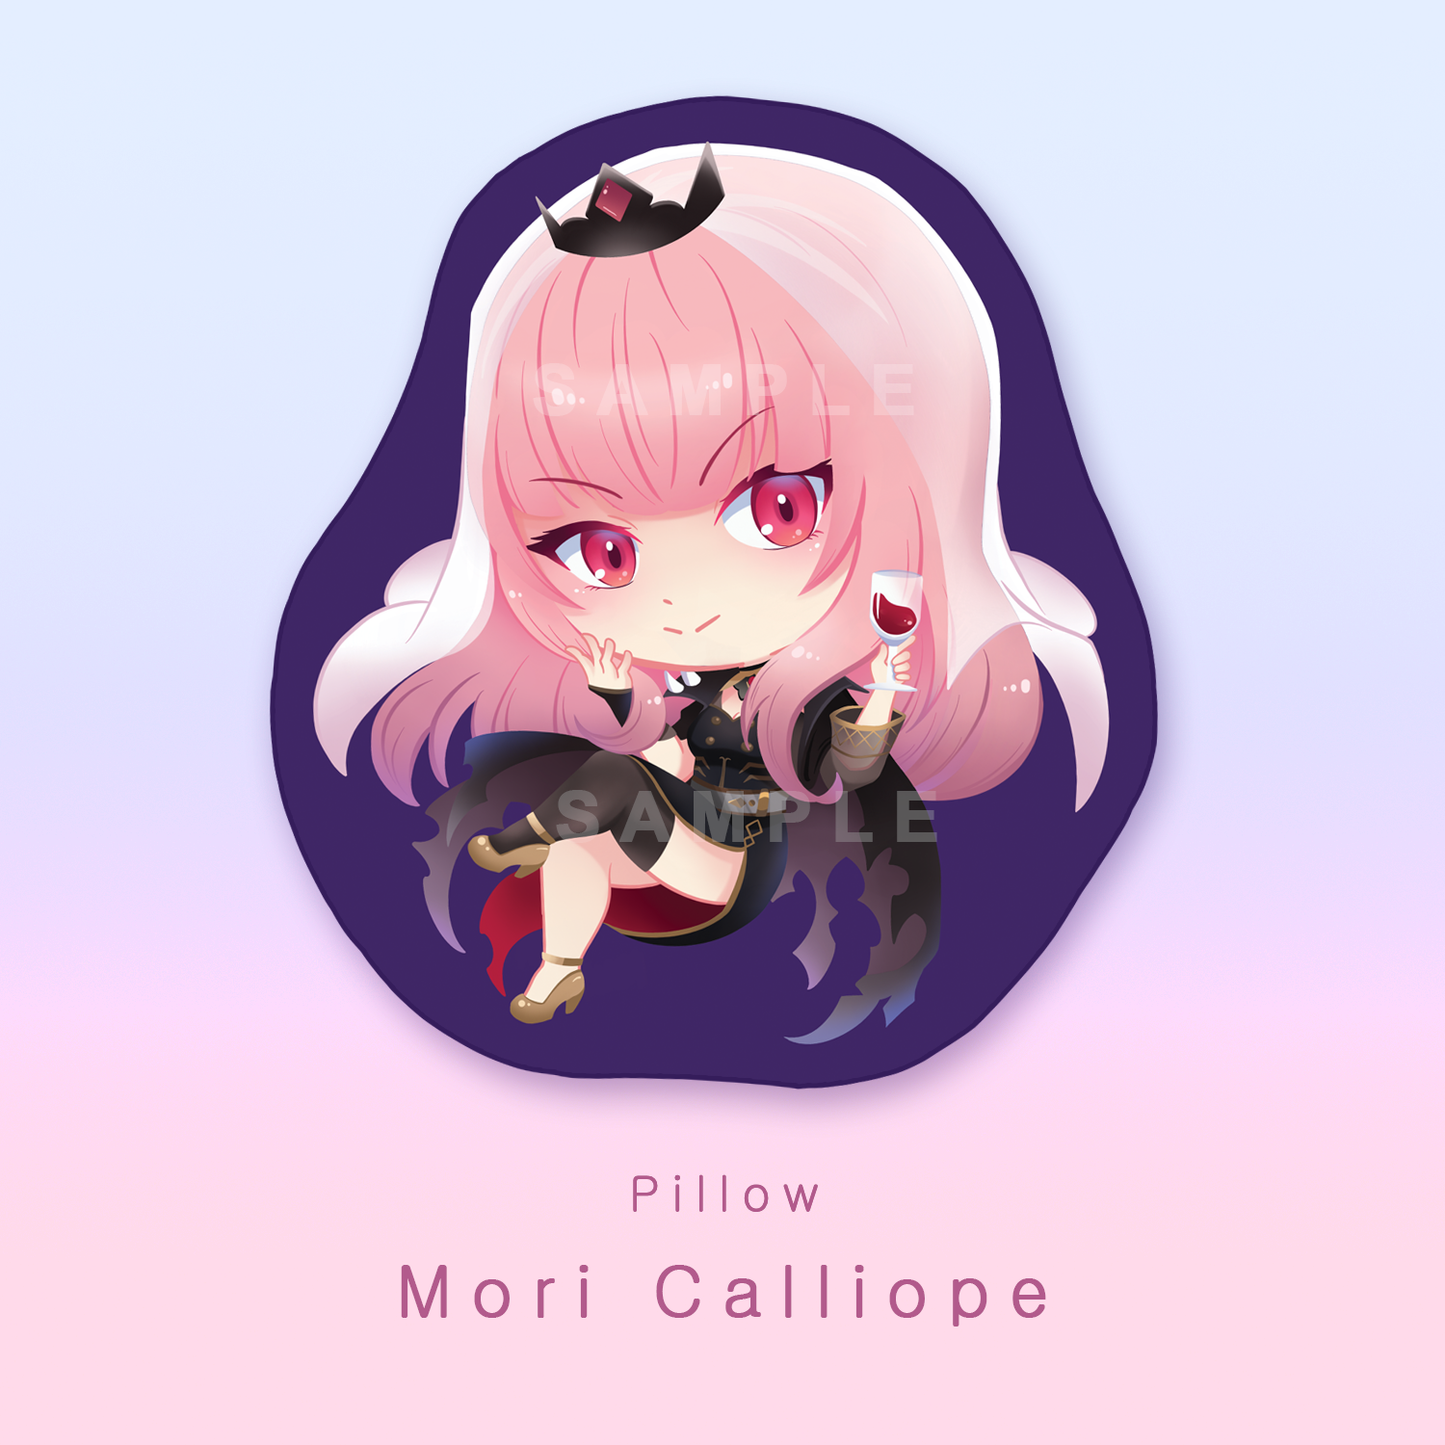 [Holo Live] Mori Calliope - pillow